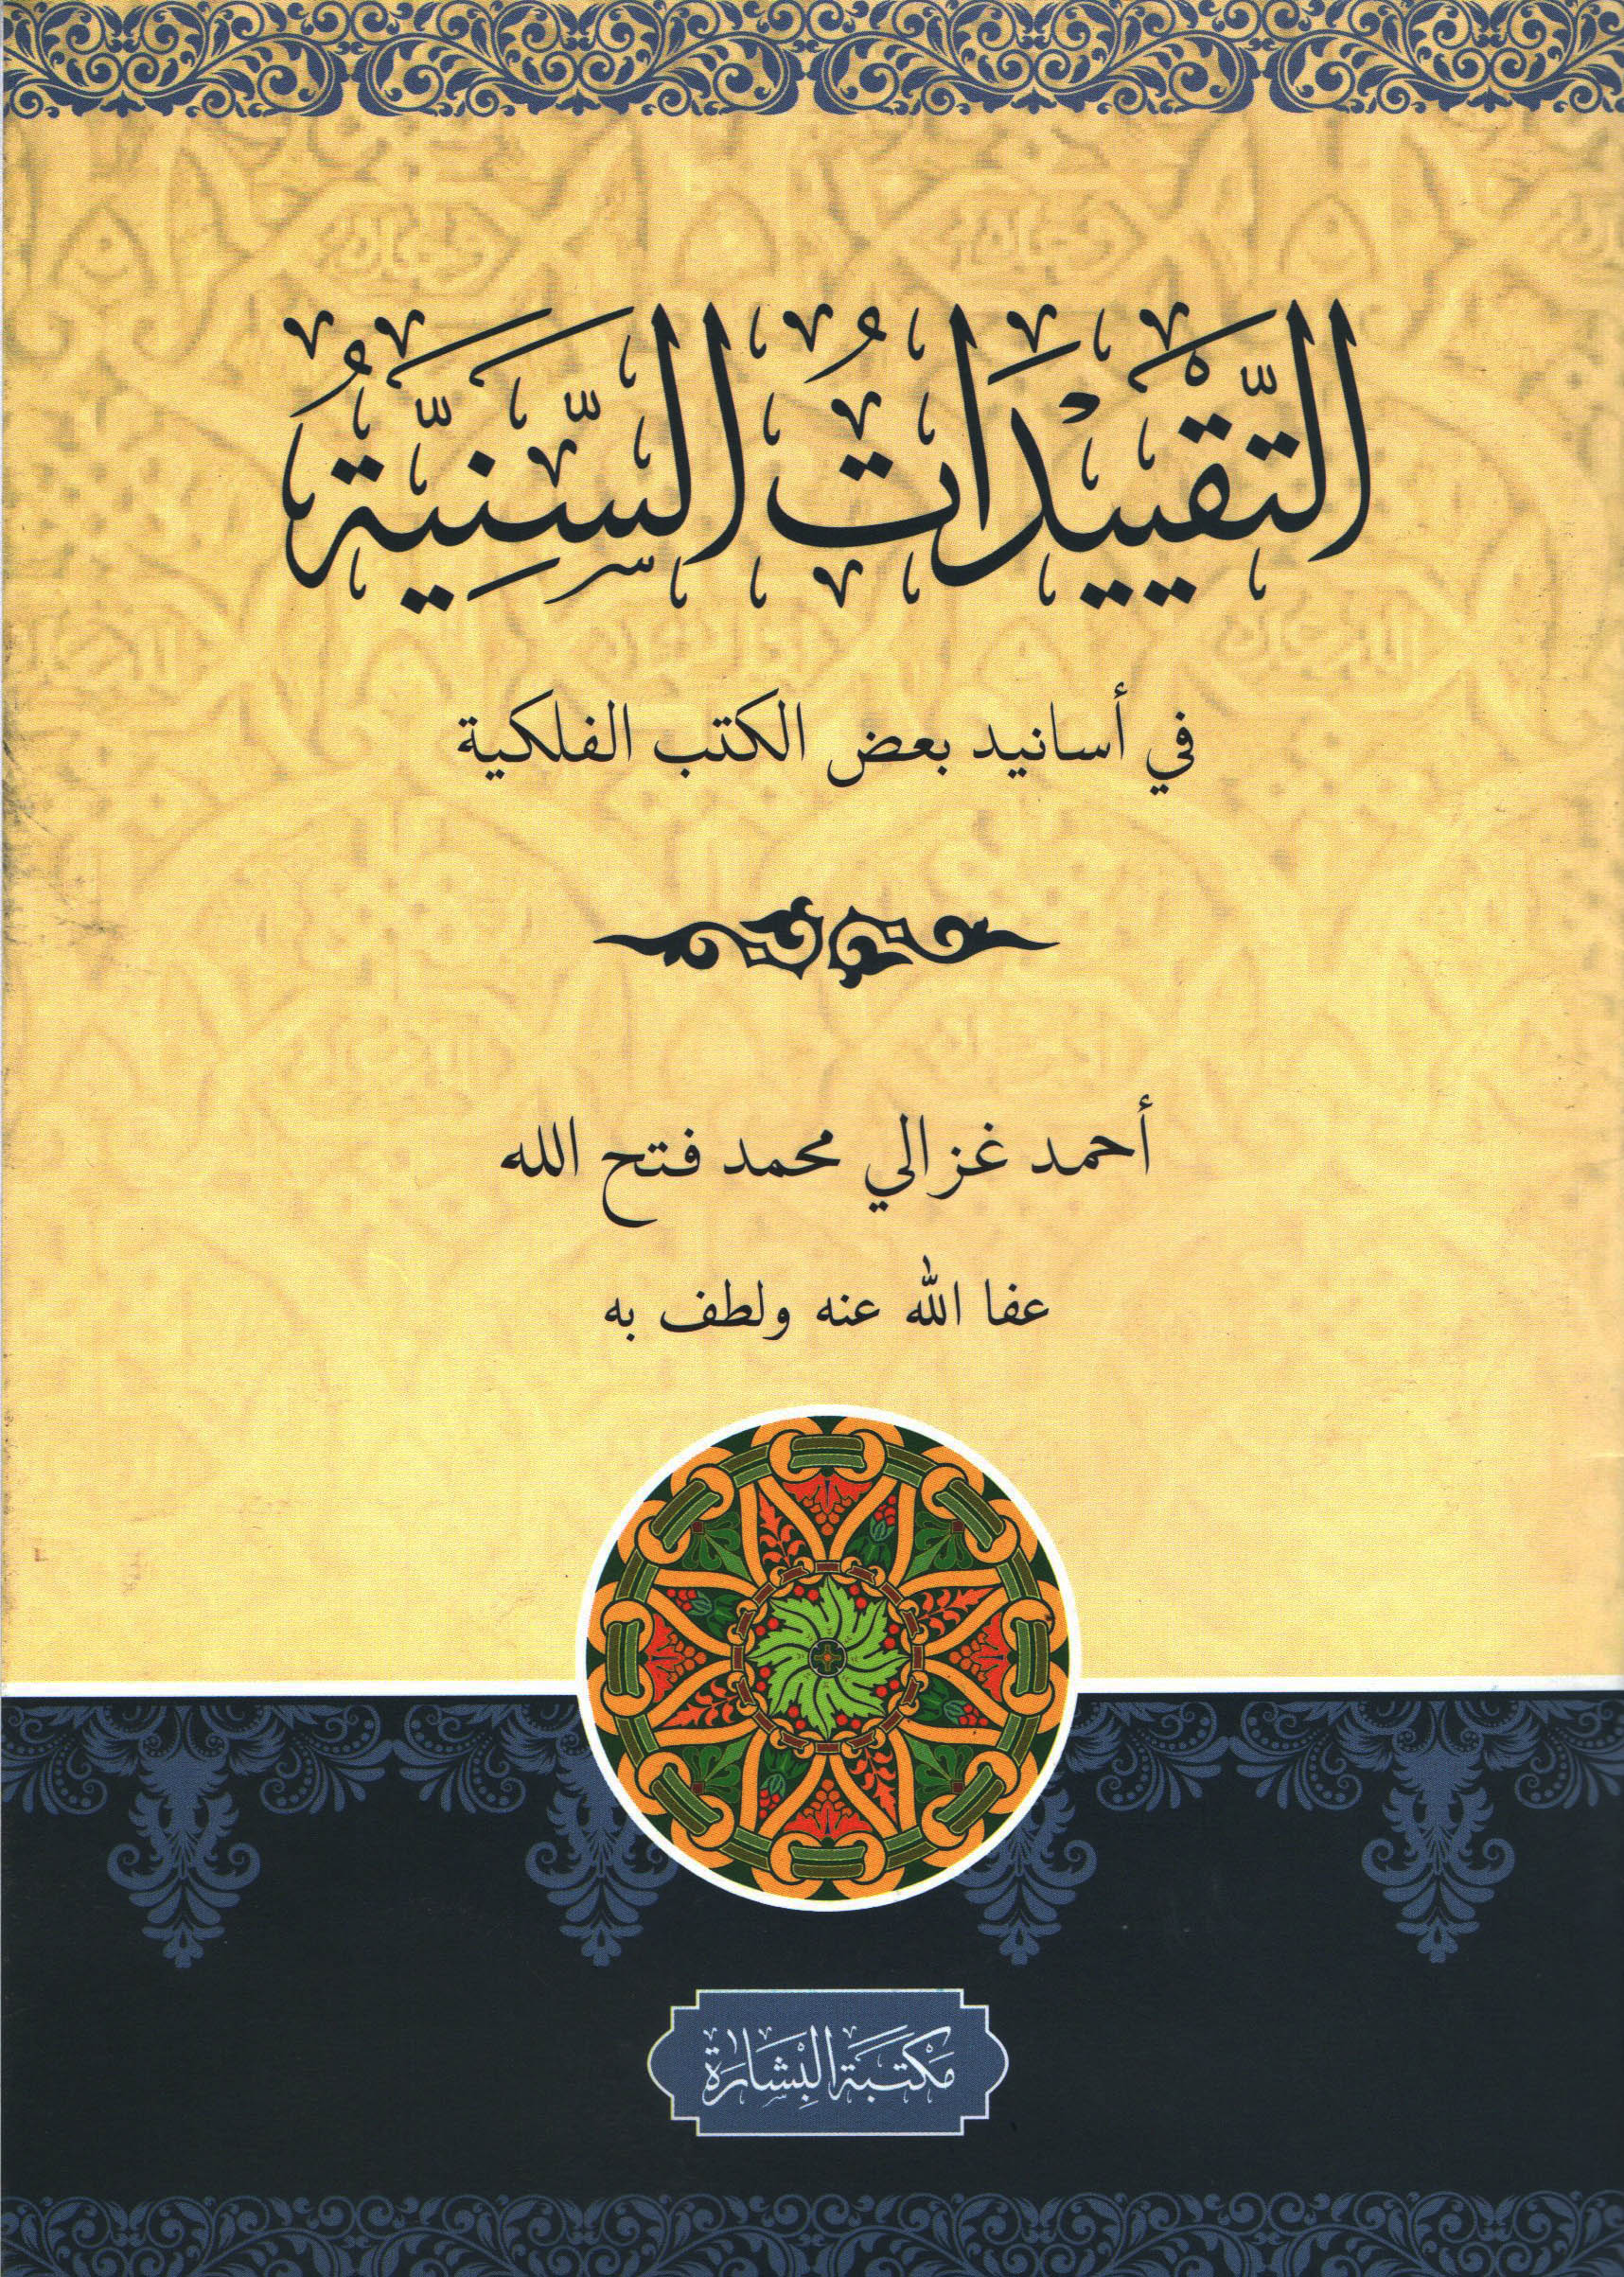 (Taqyidatul Saniyyah) : التقييدات السنية في أسانيد بعض الكتب الفلكية